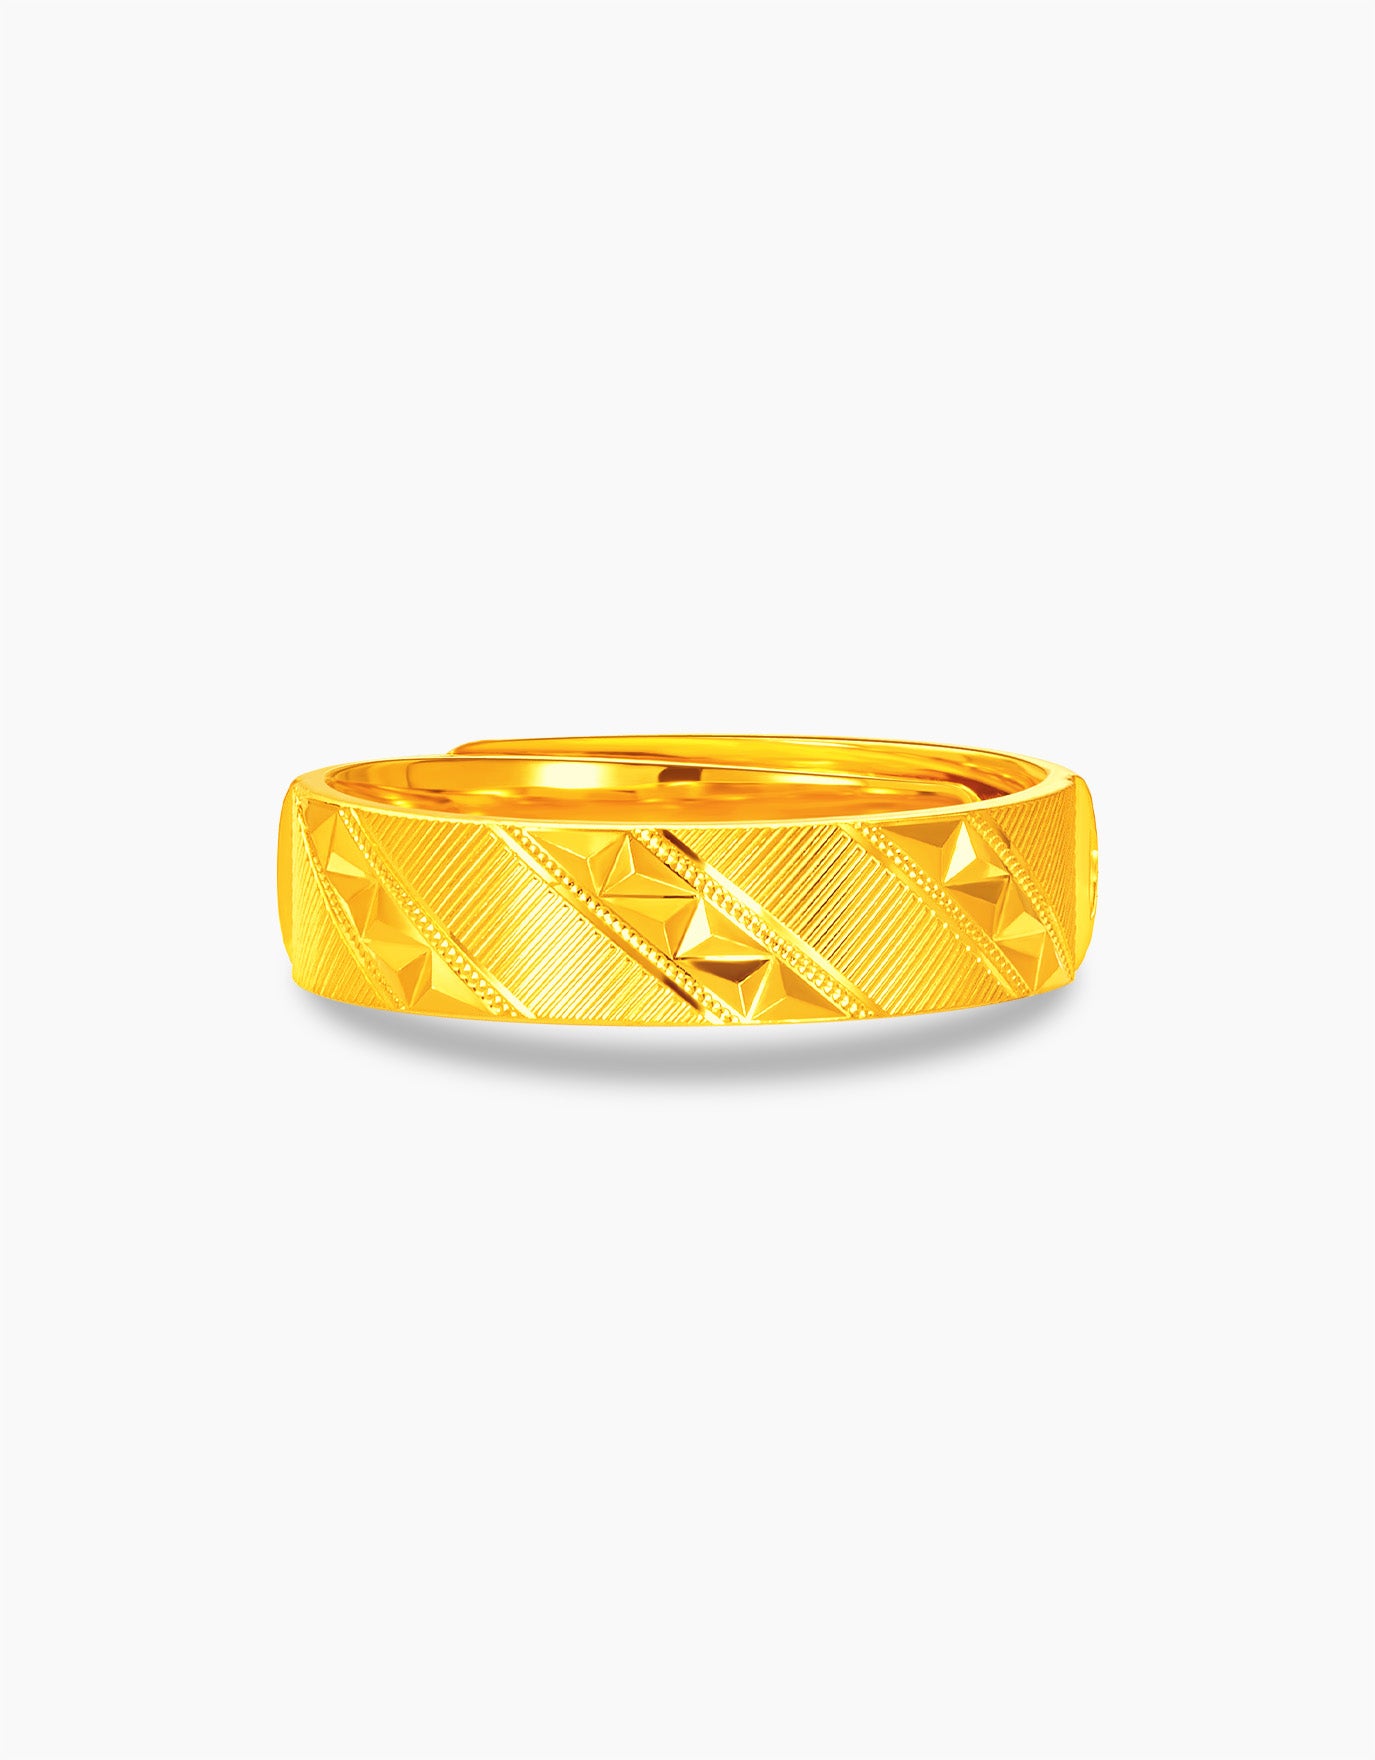 LVC 9IN Slim Esme 999 Gold Ring